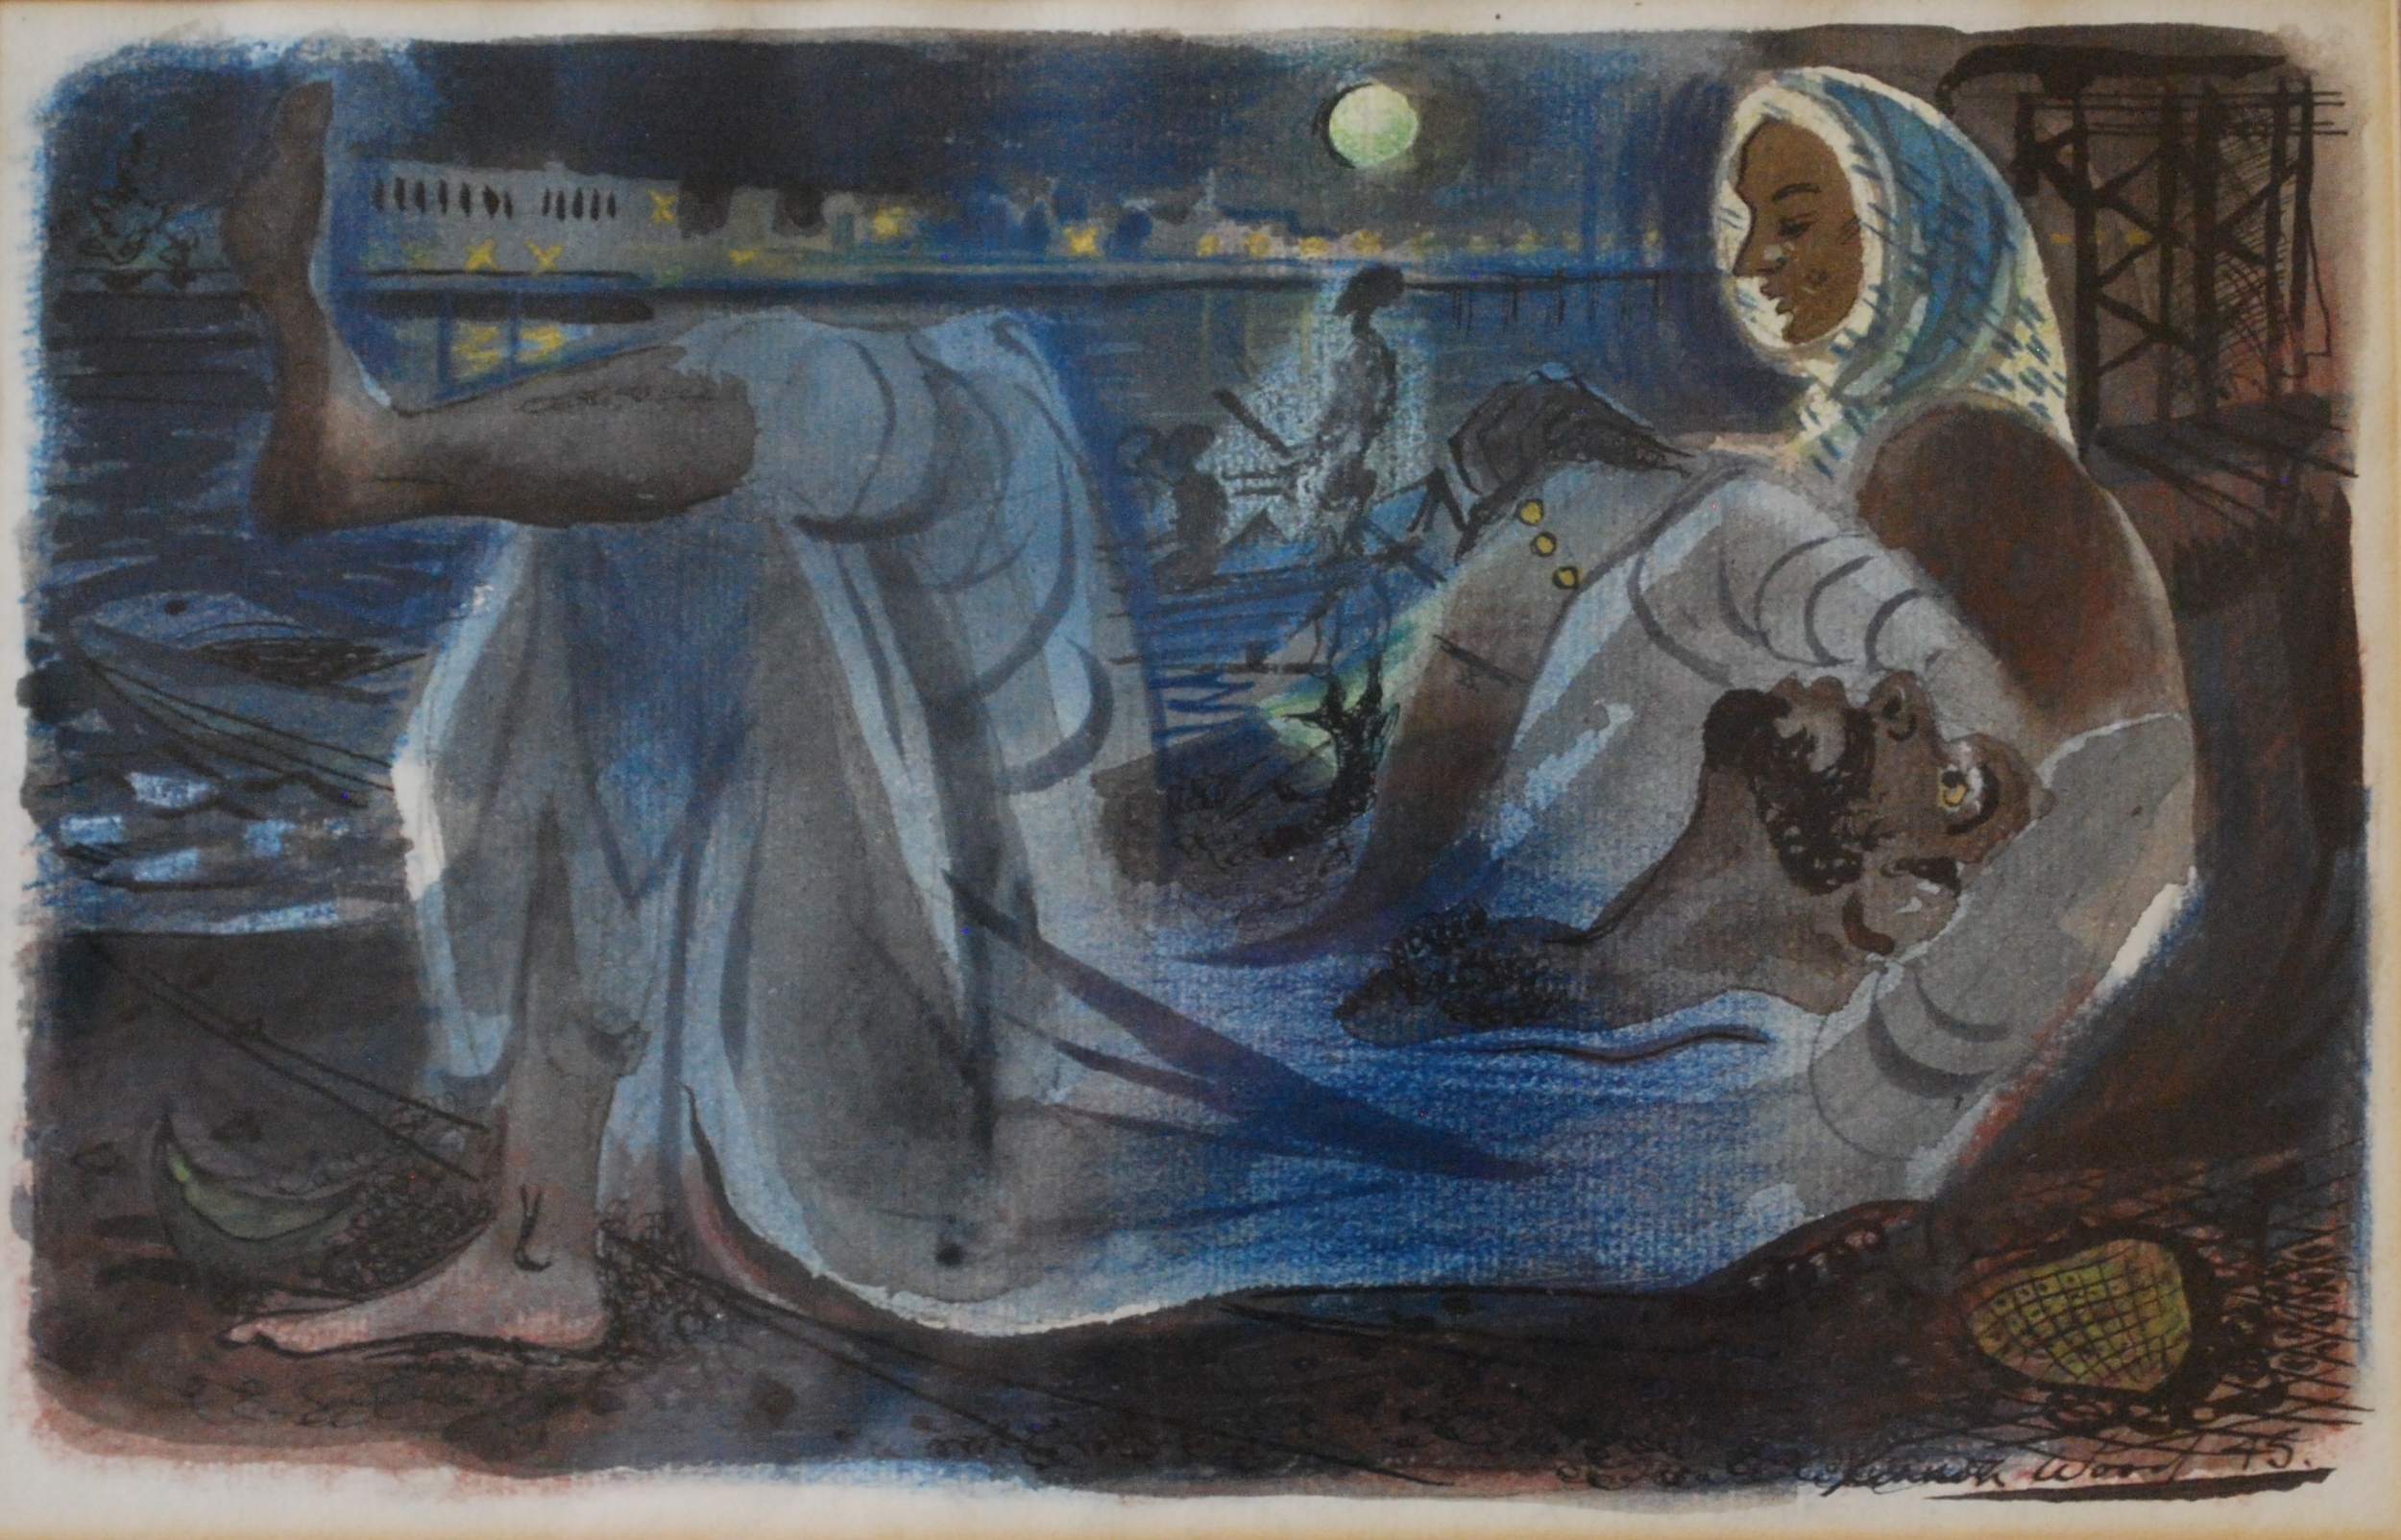  Reclining Arab Figure, 1945 Watercolour &nbsp;26 x 16 cm 